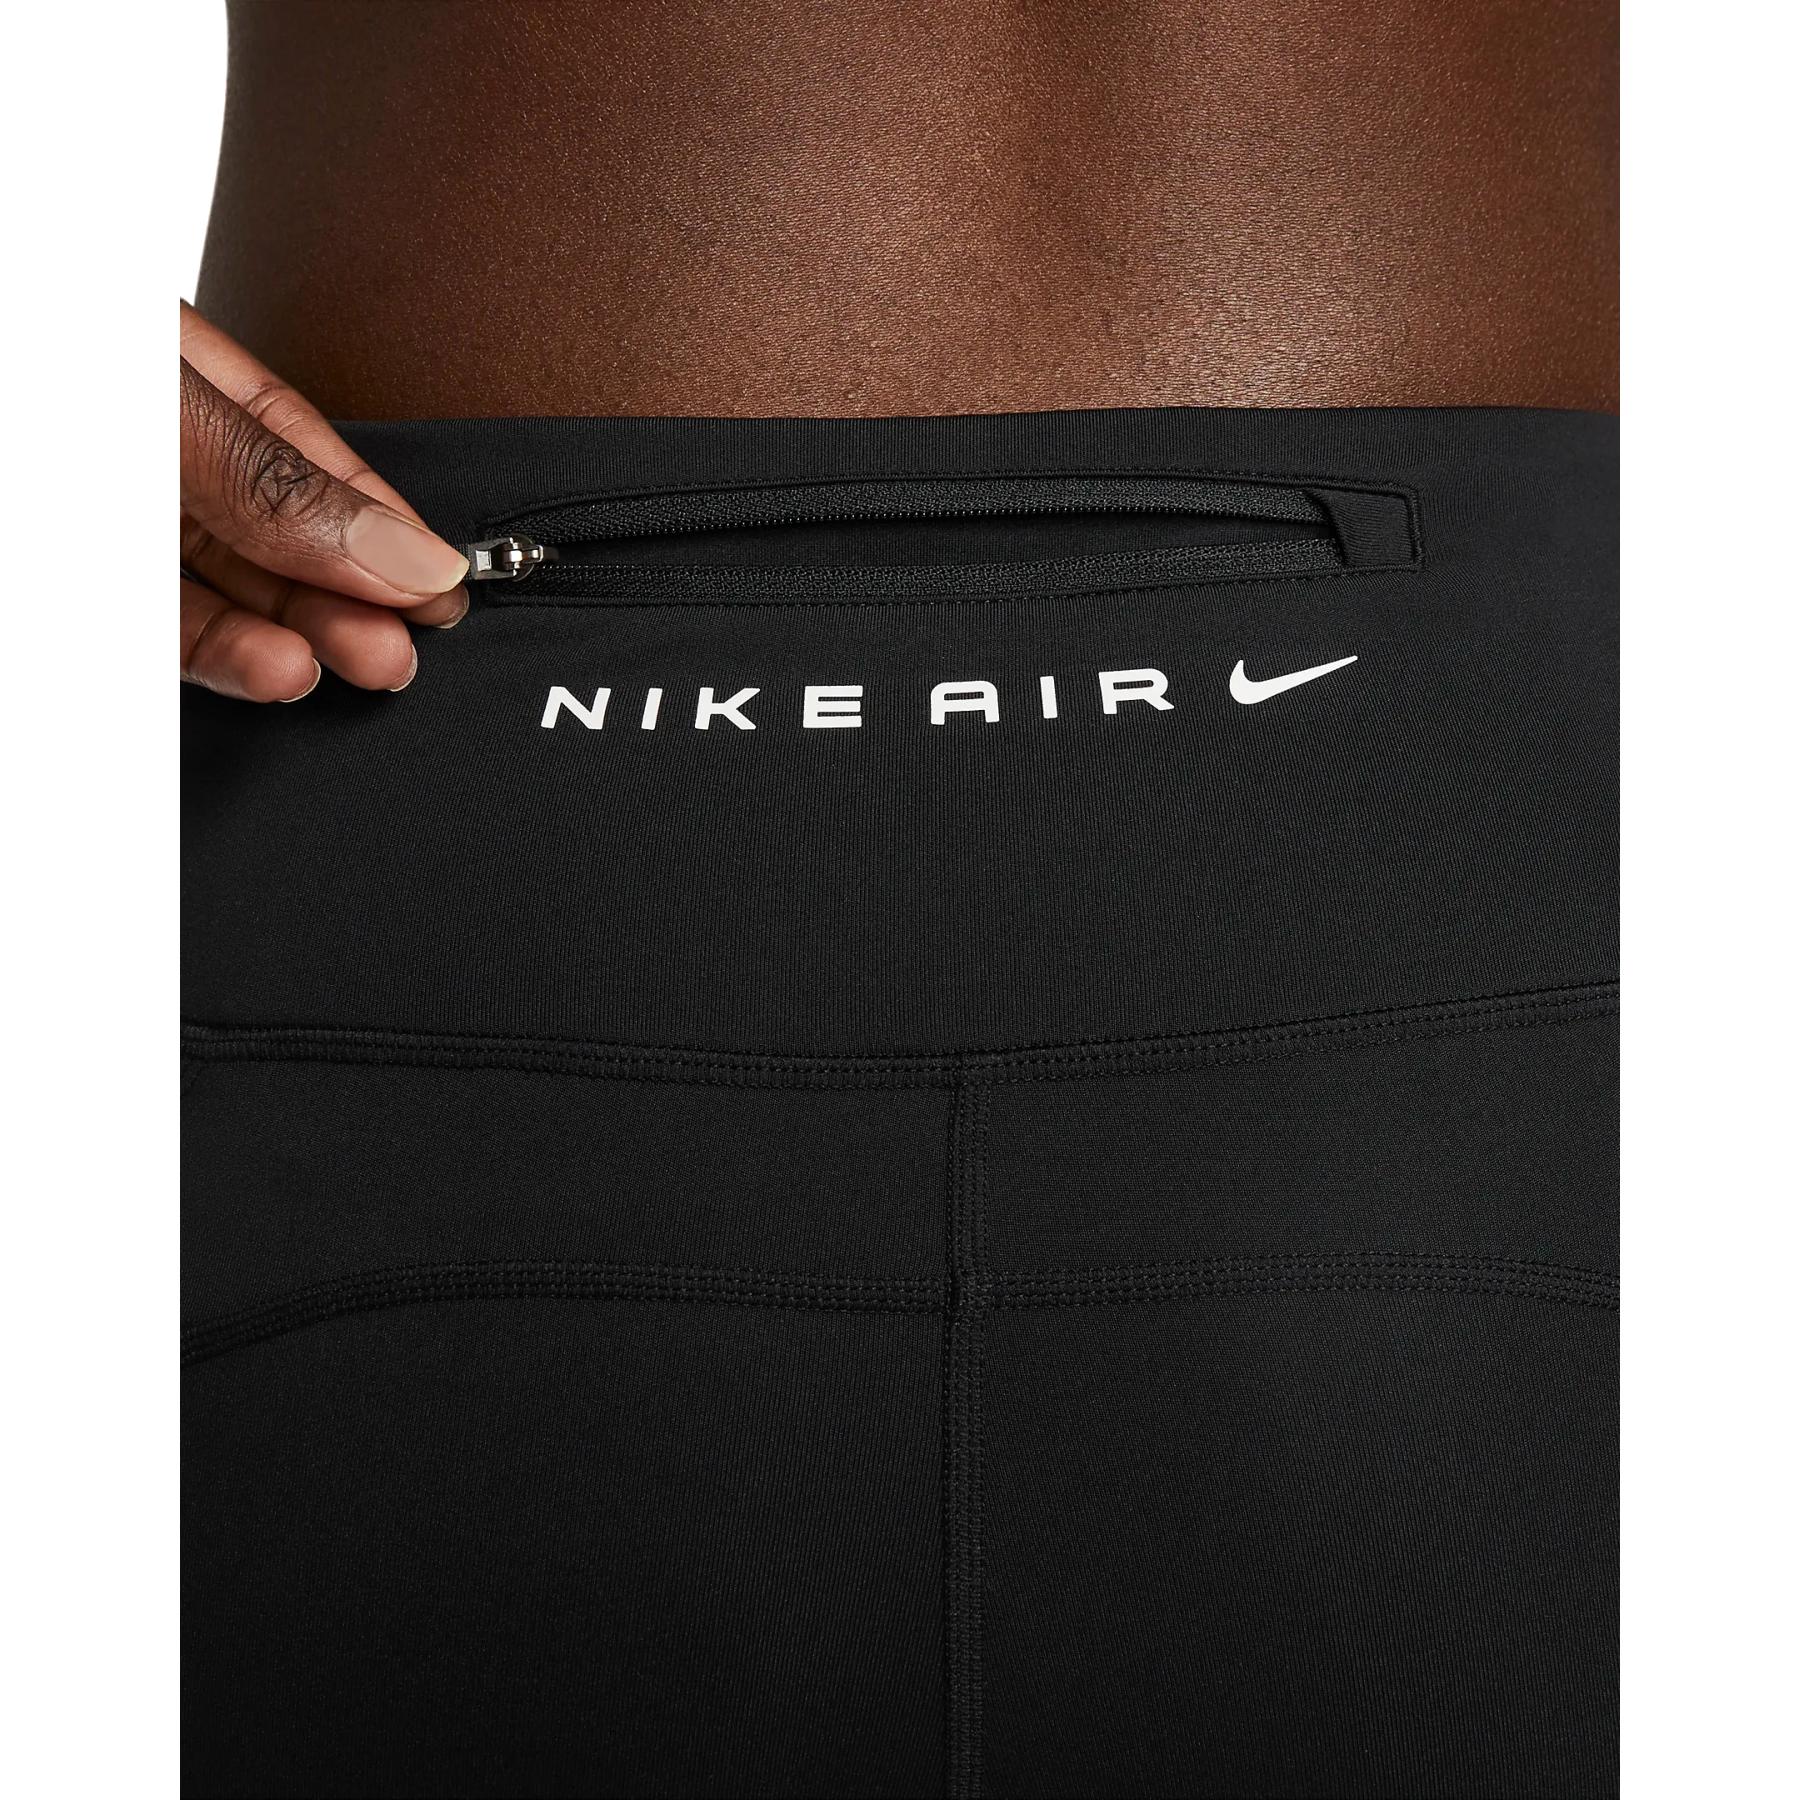 Nike Air Fast Dri-FIT Mid-Rise 7/8 Tights Women - black/black